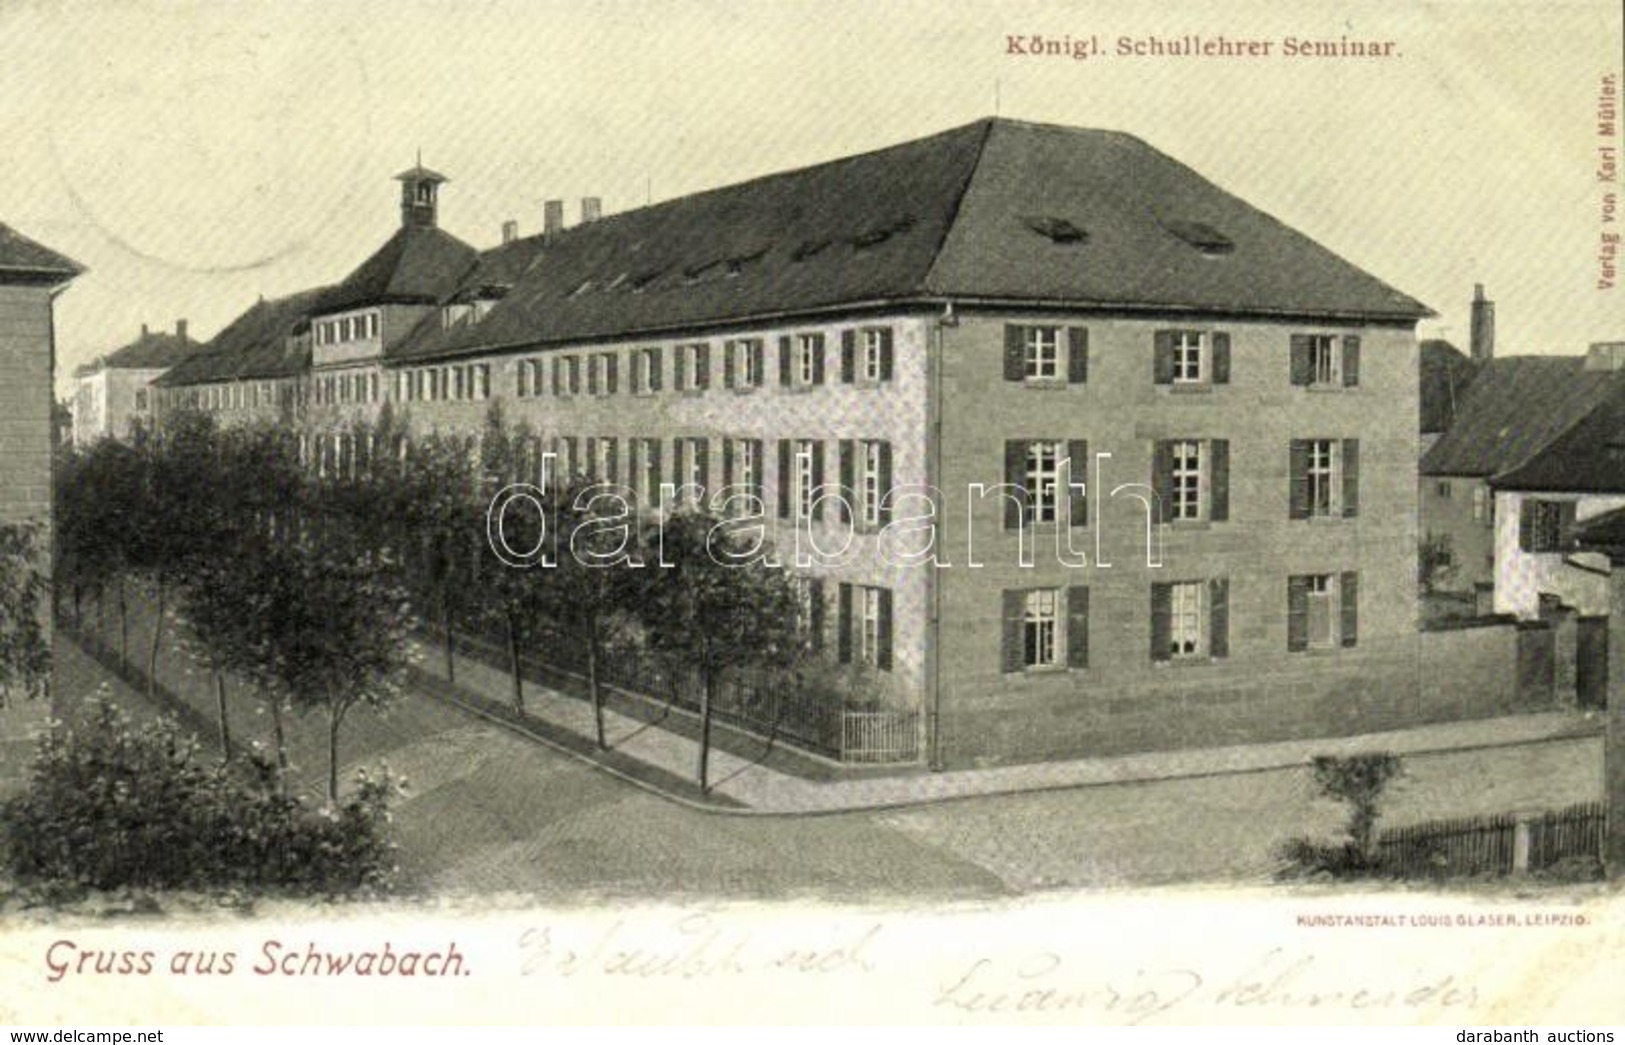 T2 Schwabach, Königl. Schullehrer Seminar; Kunstanstalt Louis Glaser / Teacher Training School - Ohne Zuordnung